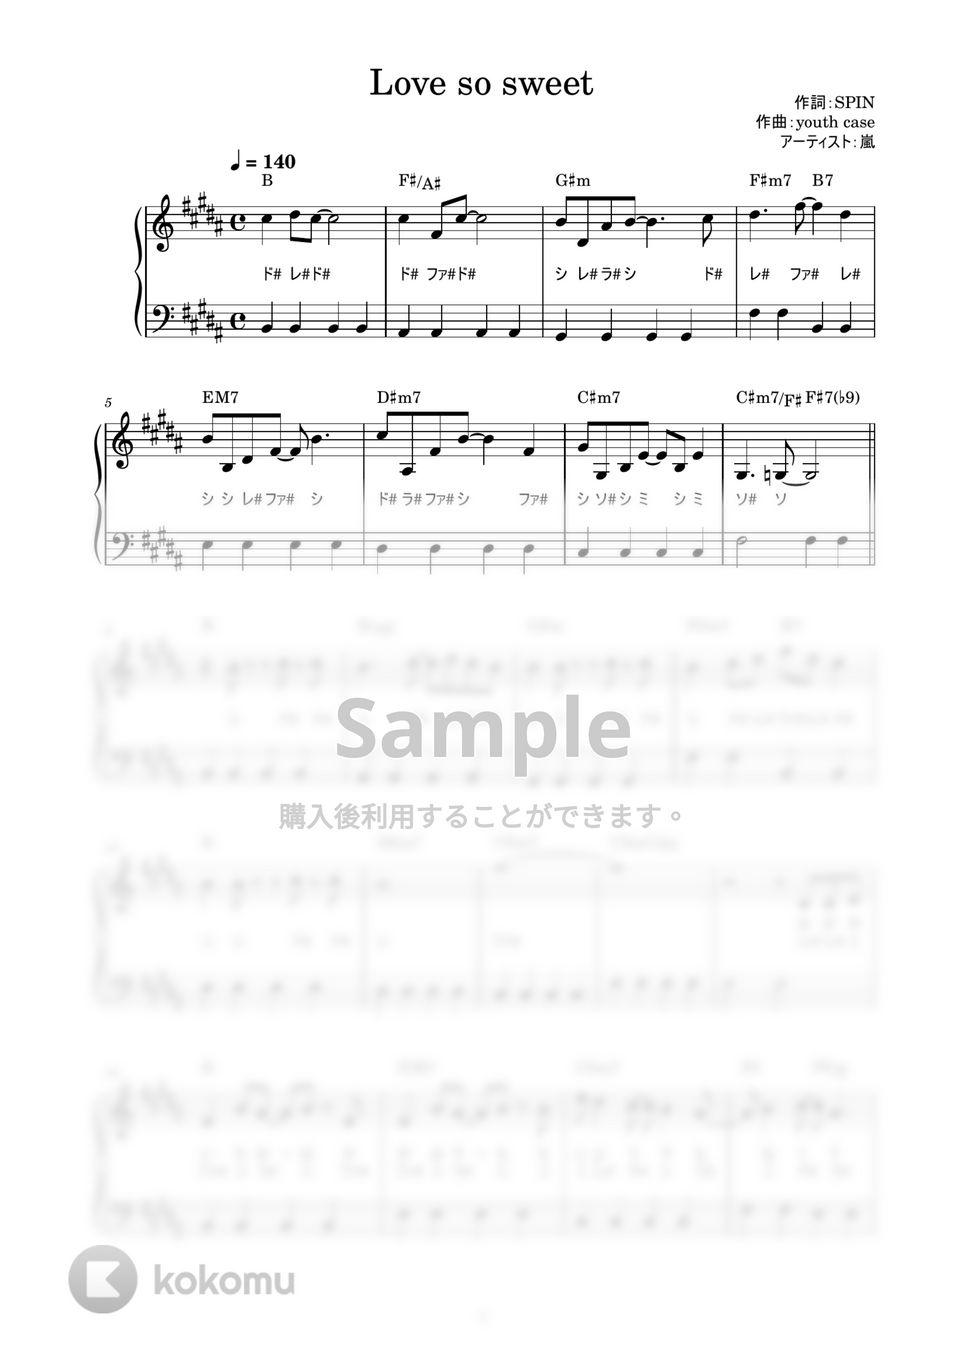 嵐 - Love so sweet (かんたん / 歌詞付き / ドレミ付き / 初心者) by piano.tokyo